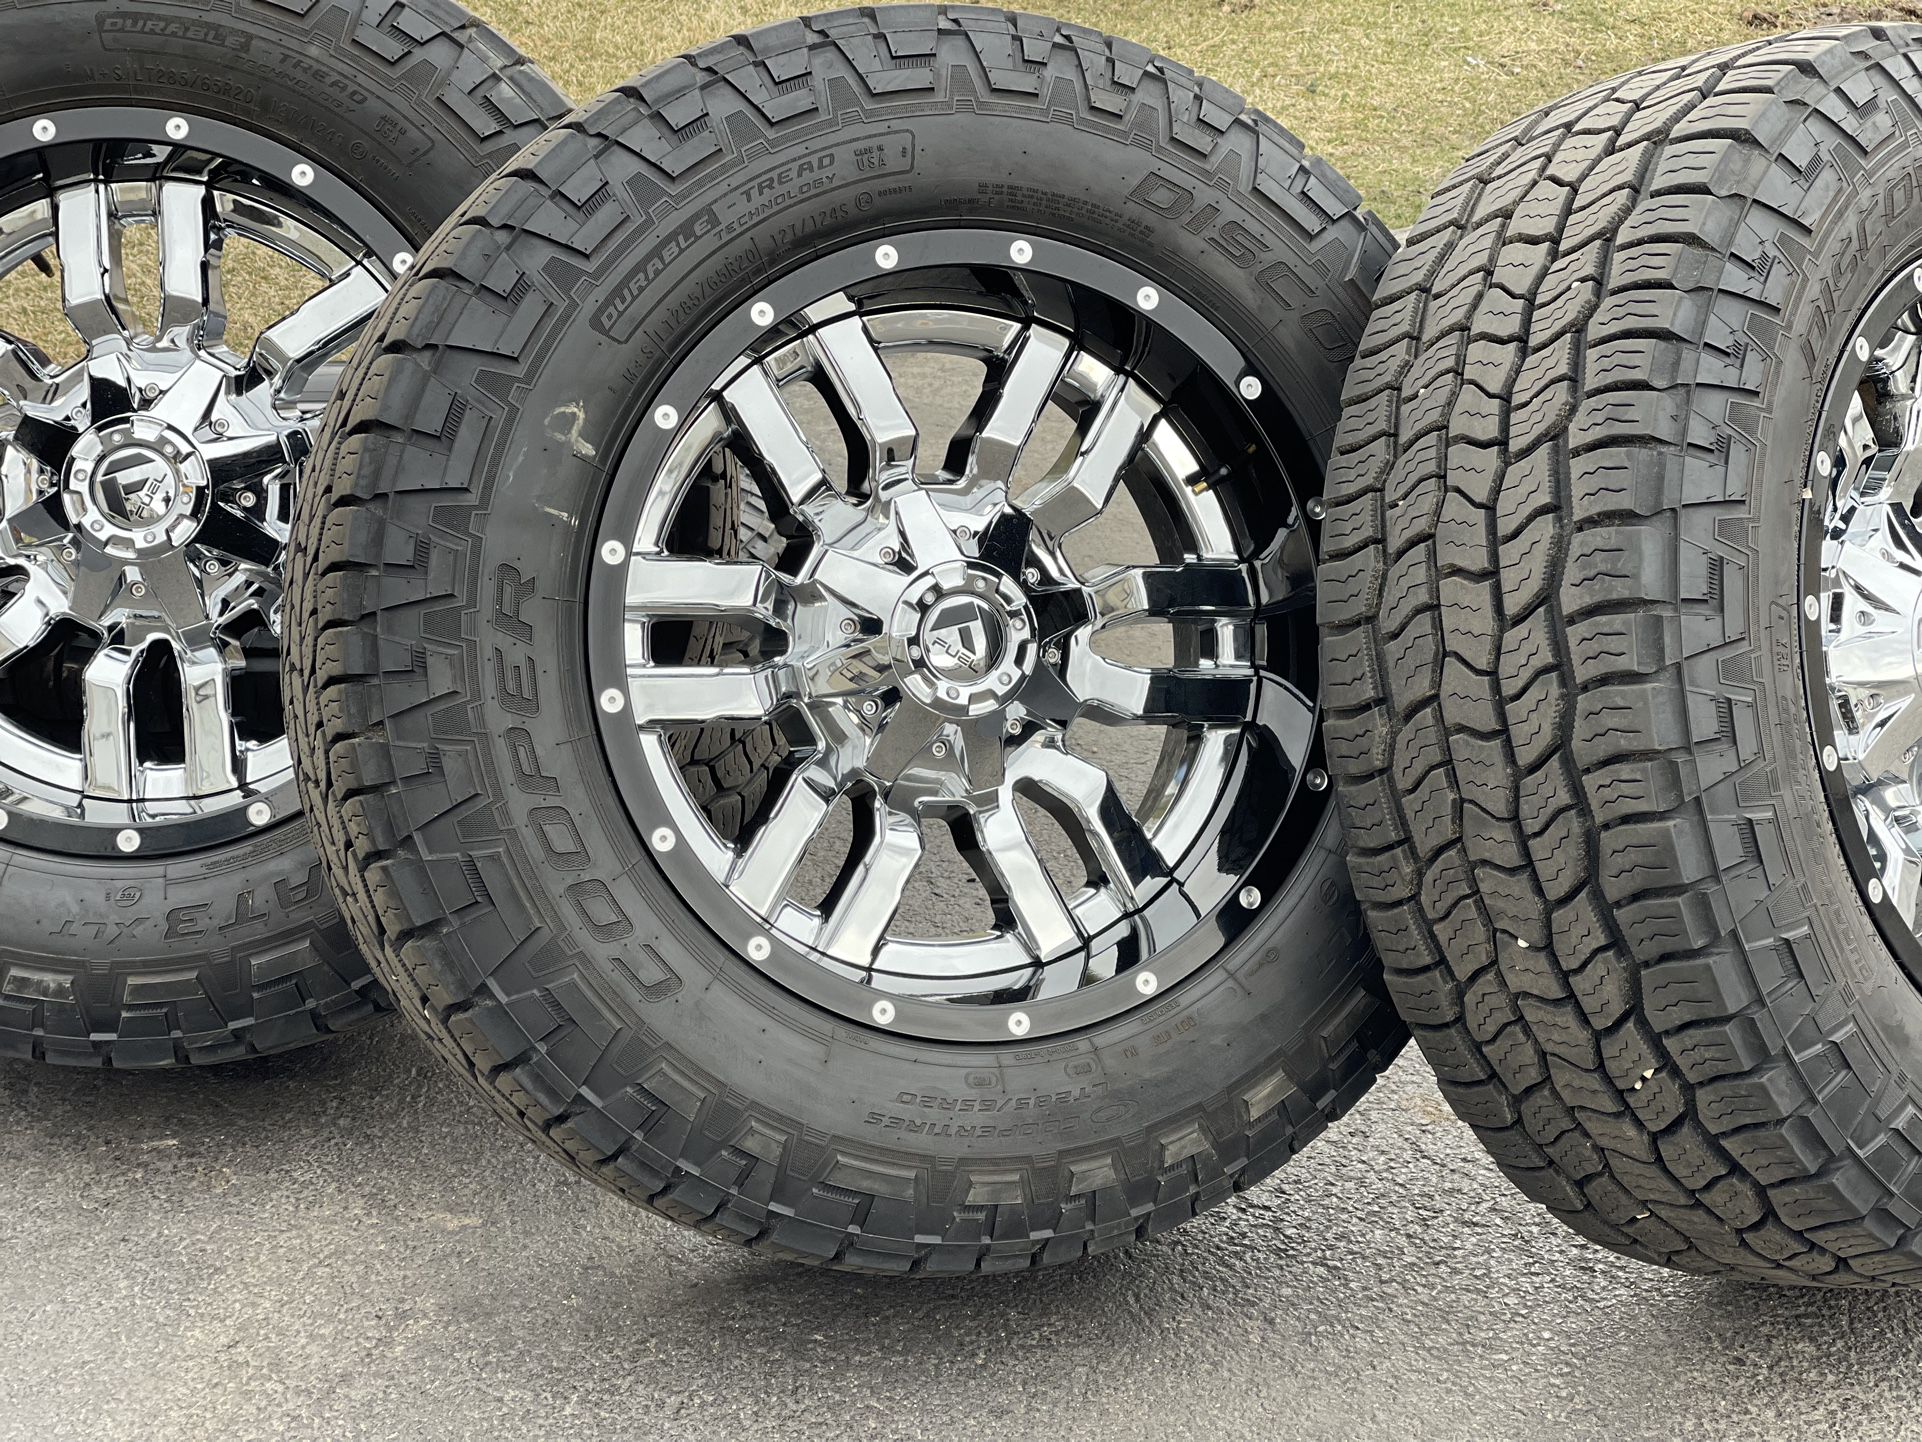 20” Fuel Rims Chrome 8x180 wheels Chevy 2500 Silverado GMC Sierra Denali 3500HD 285/65R20 Tires Cooper A/T 10ply